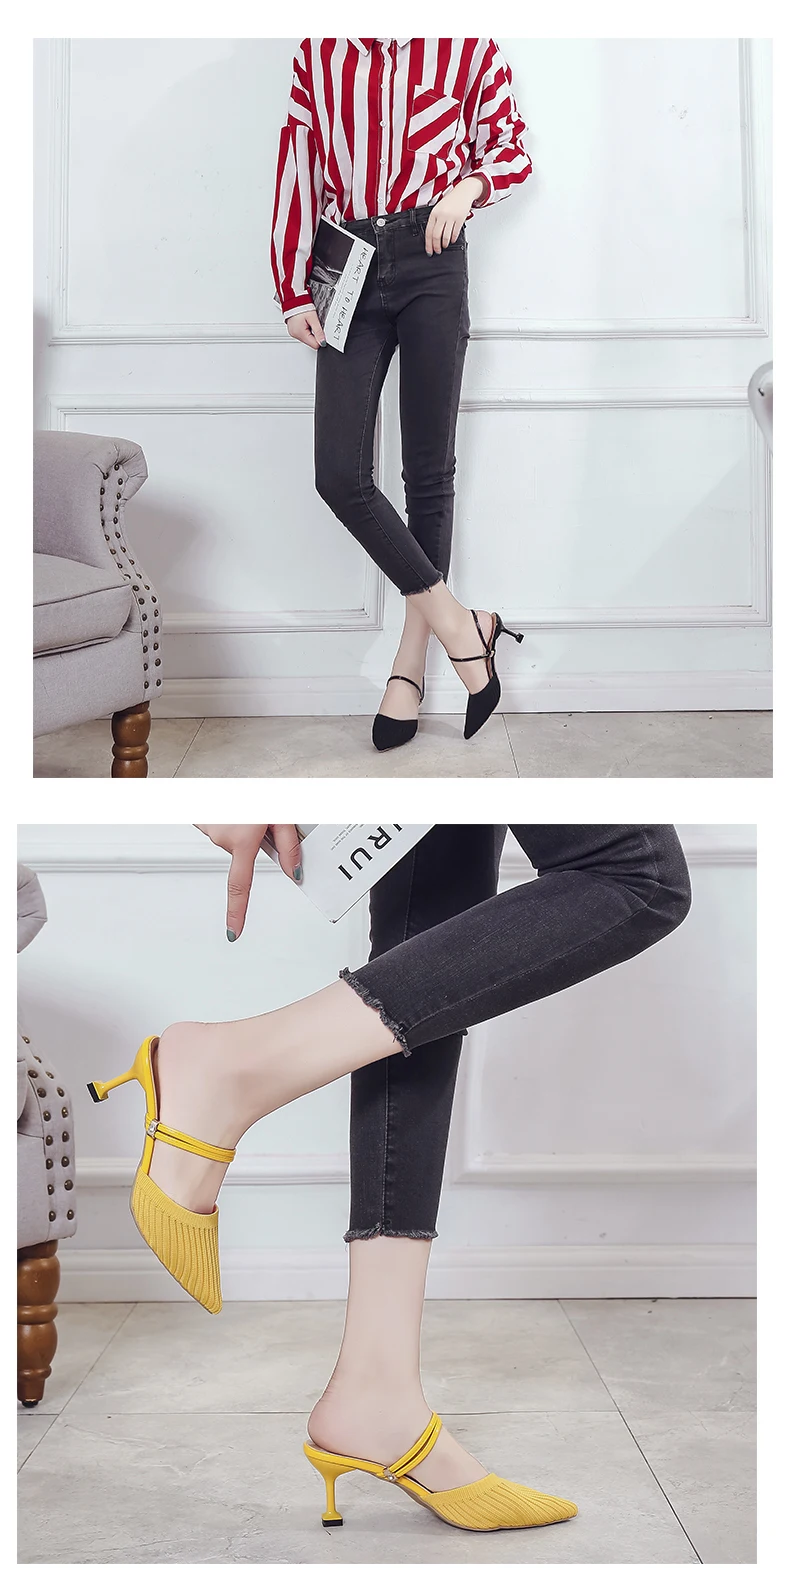 Г. Летние босоножки модельные туфли для вечеринок Вязаные тапочки на высоком каблуке женские шлепанцы женские туфли с острым носком на массивном каблуке, цвет черный, желтый